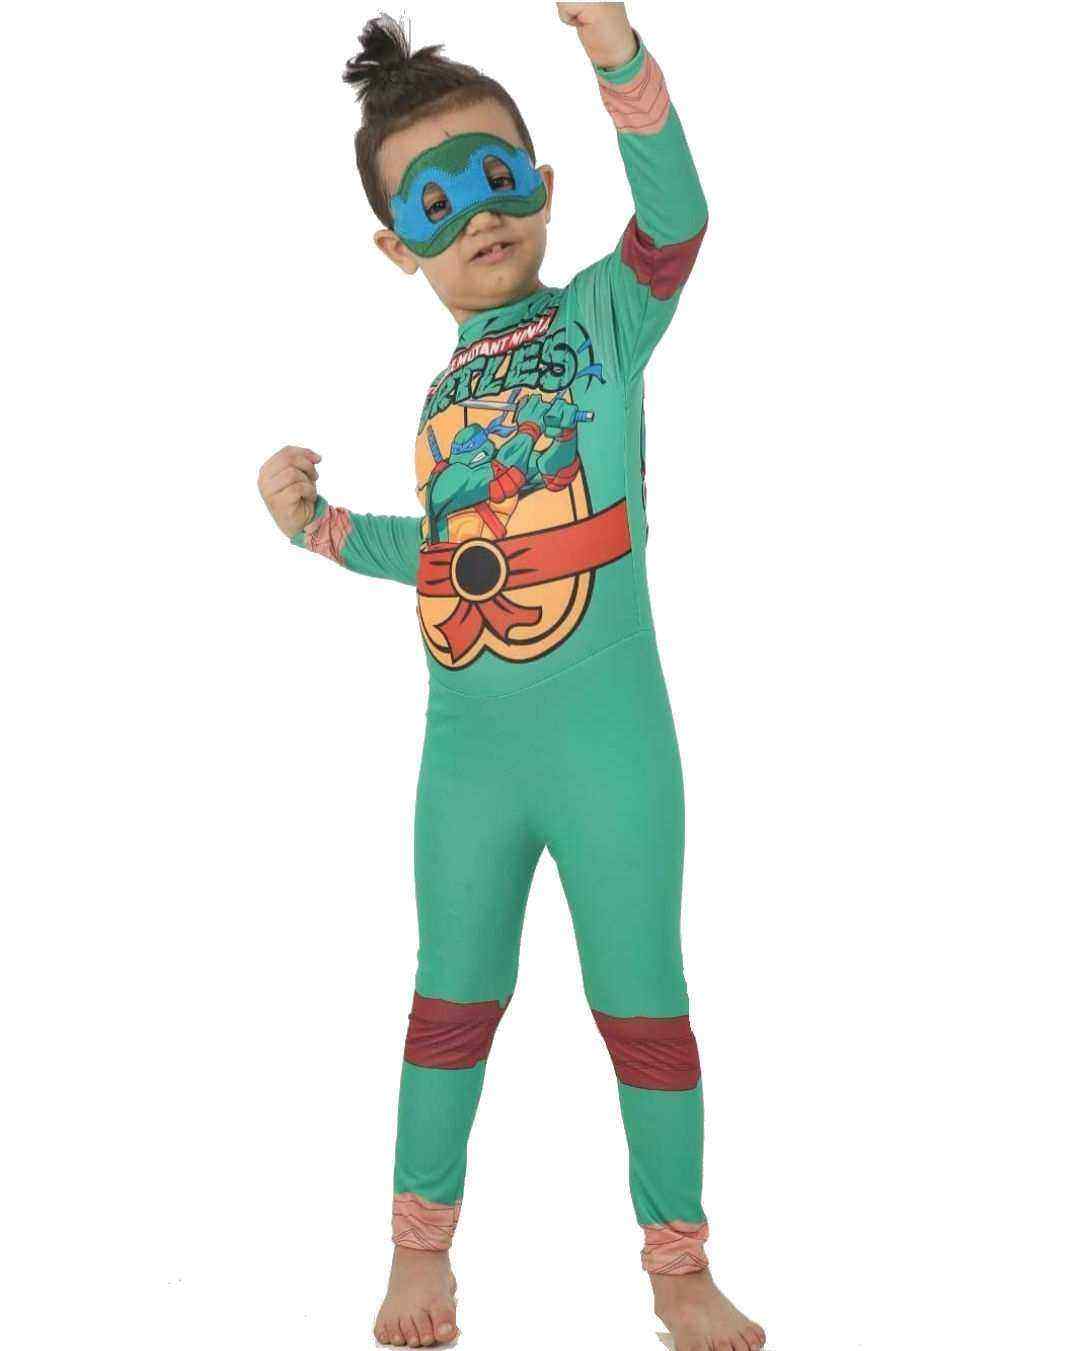 Ninja Kaplumbağa Kostümü | Ninja Turtles Costume